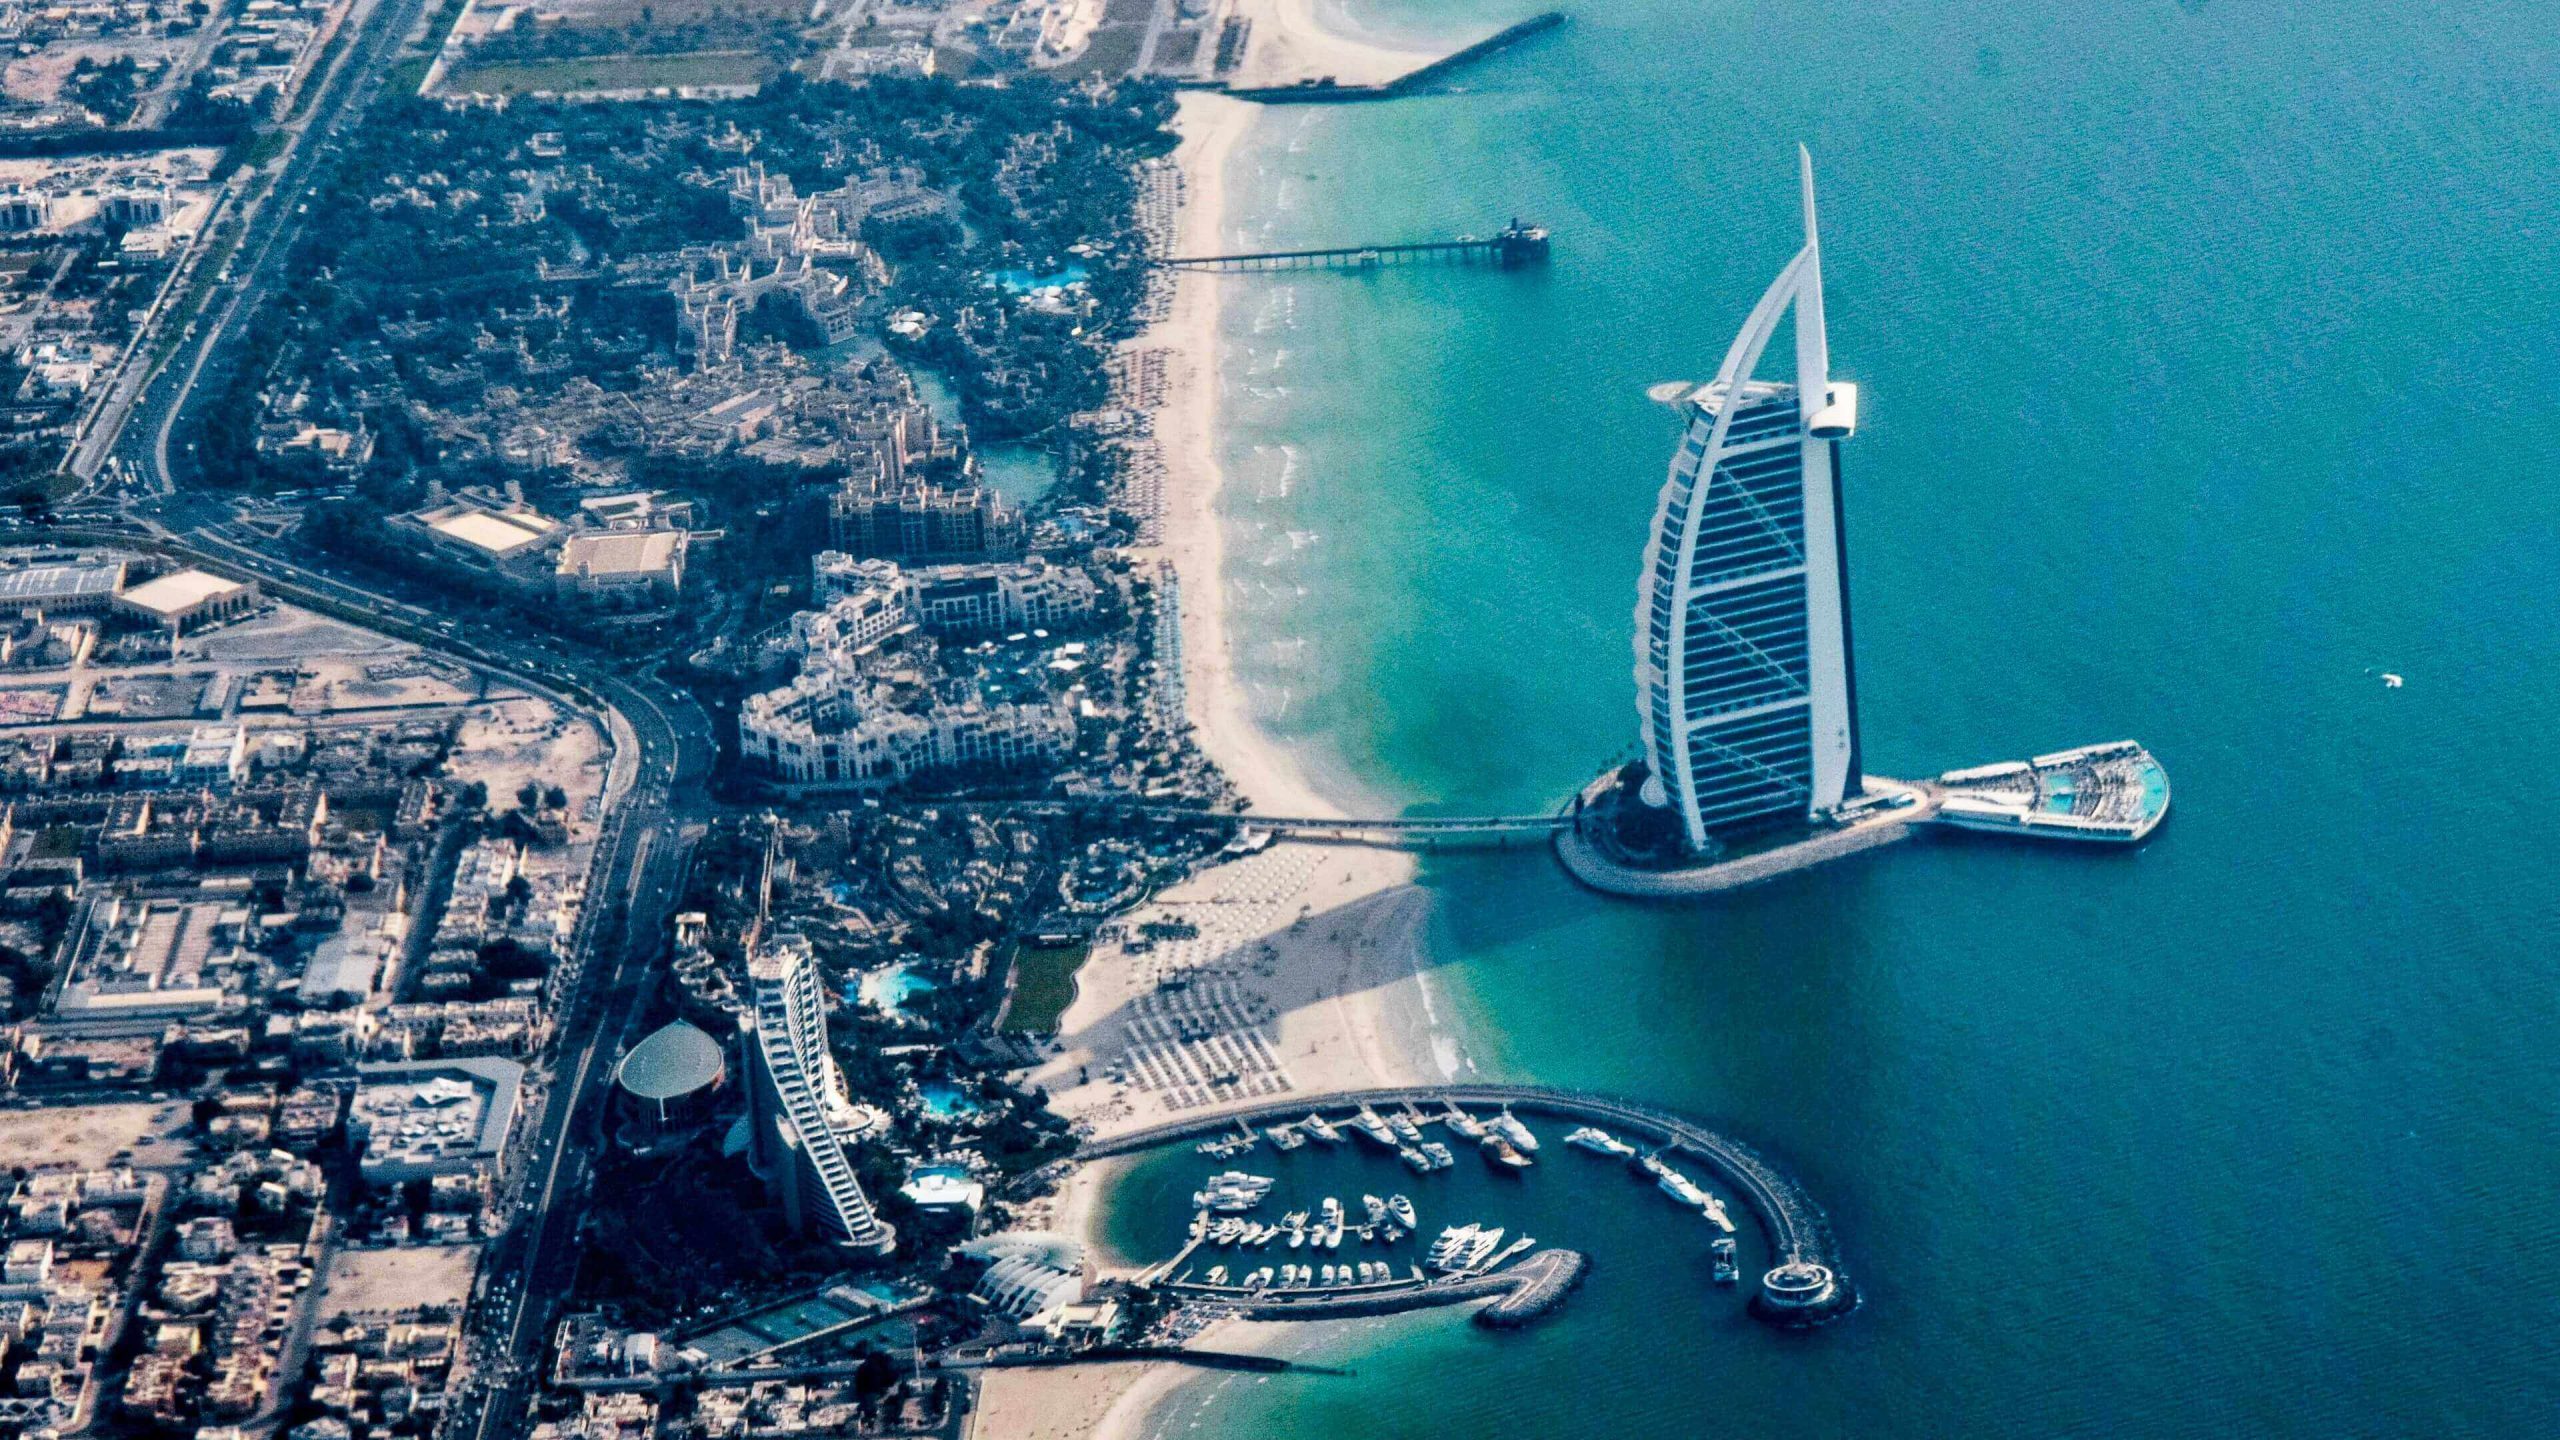 Burj Al Arab, a reason to travel to Dubai